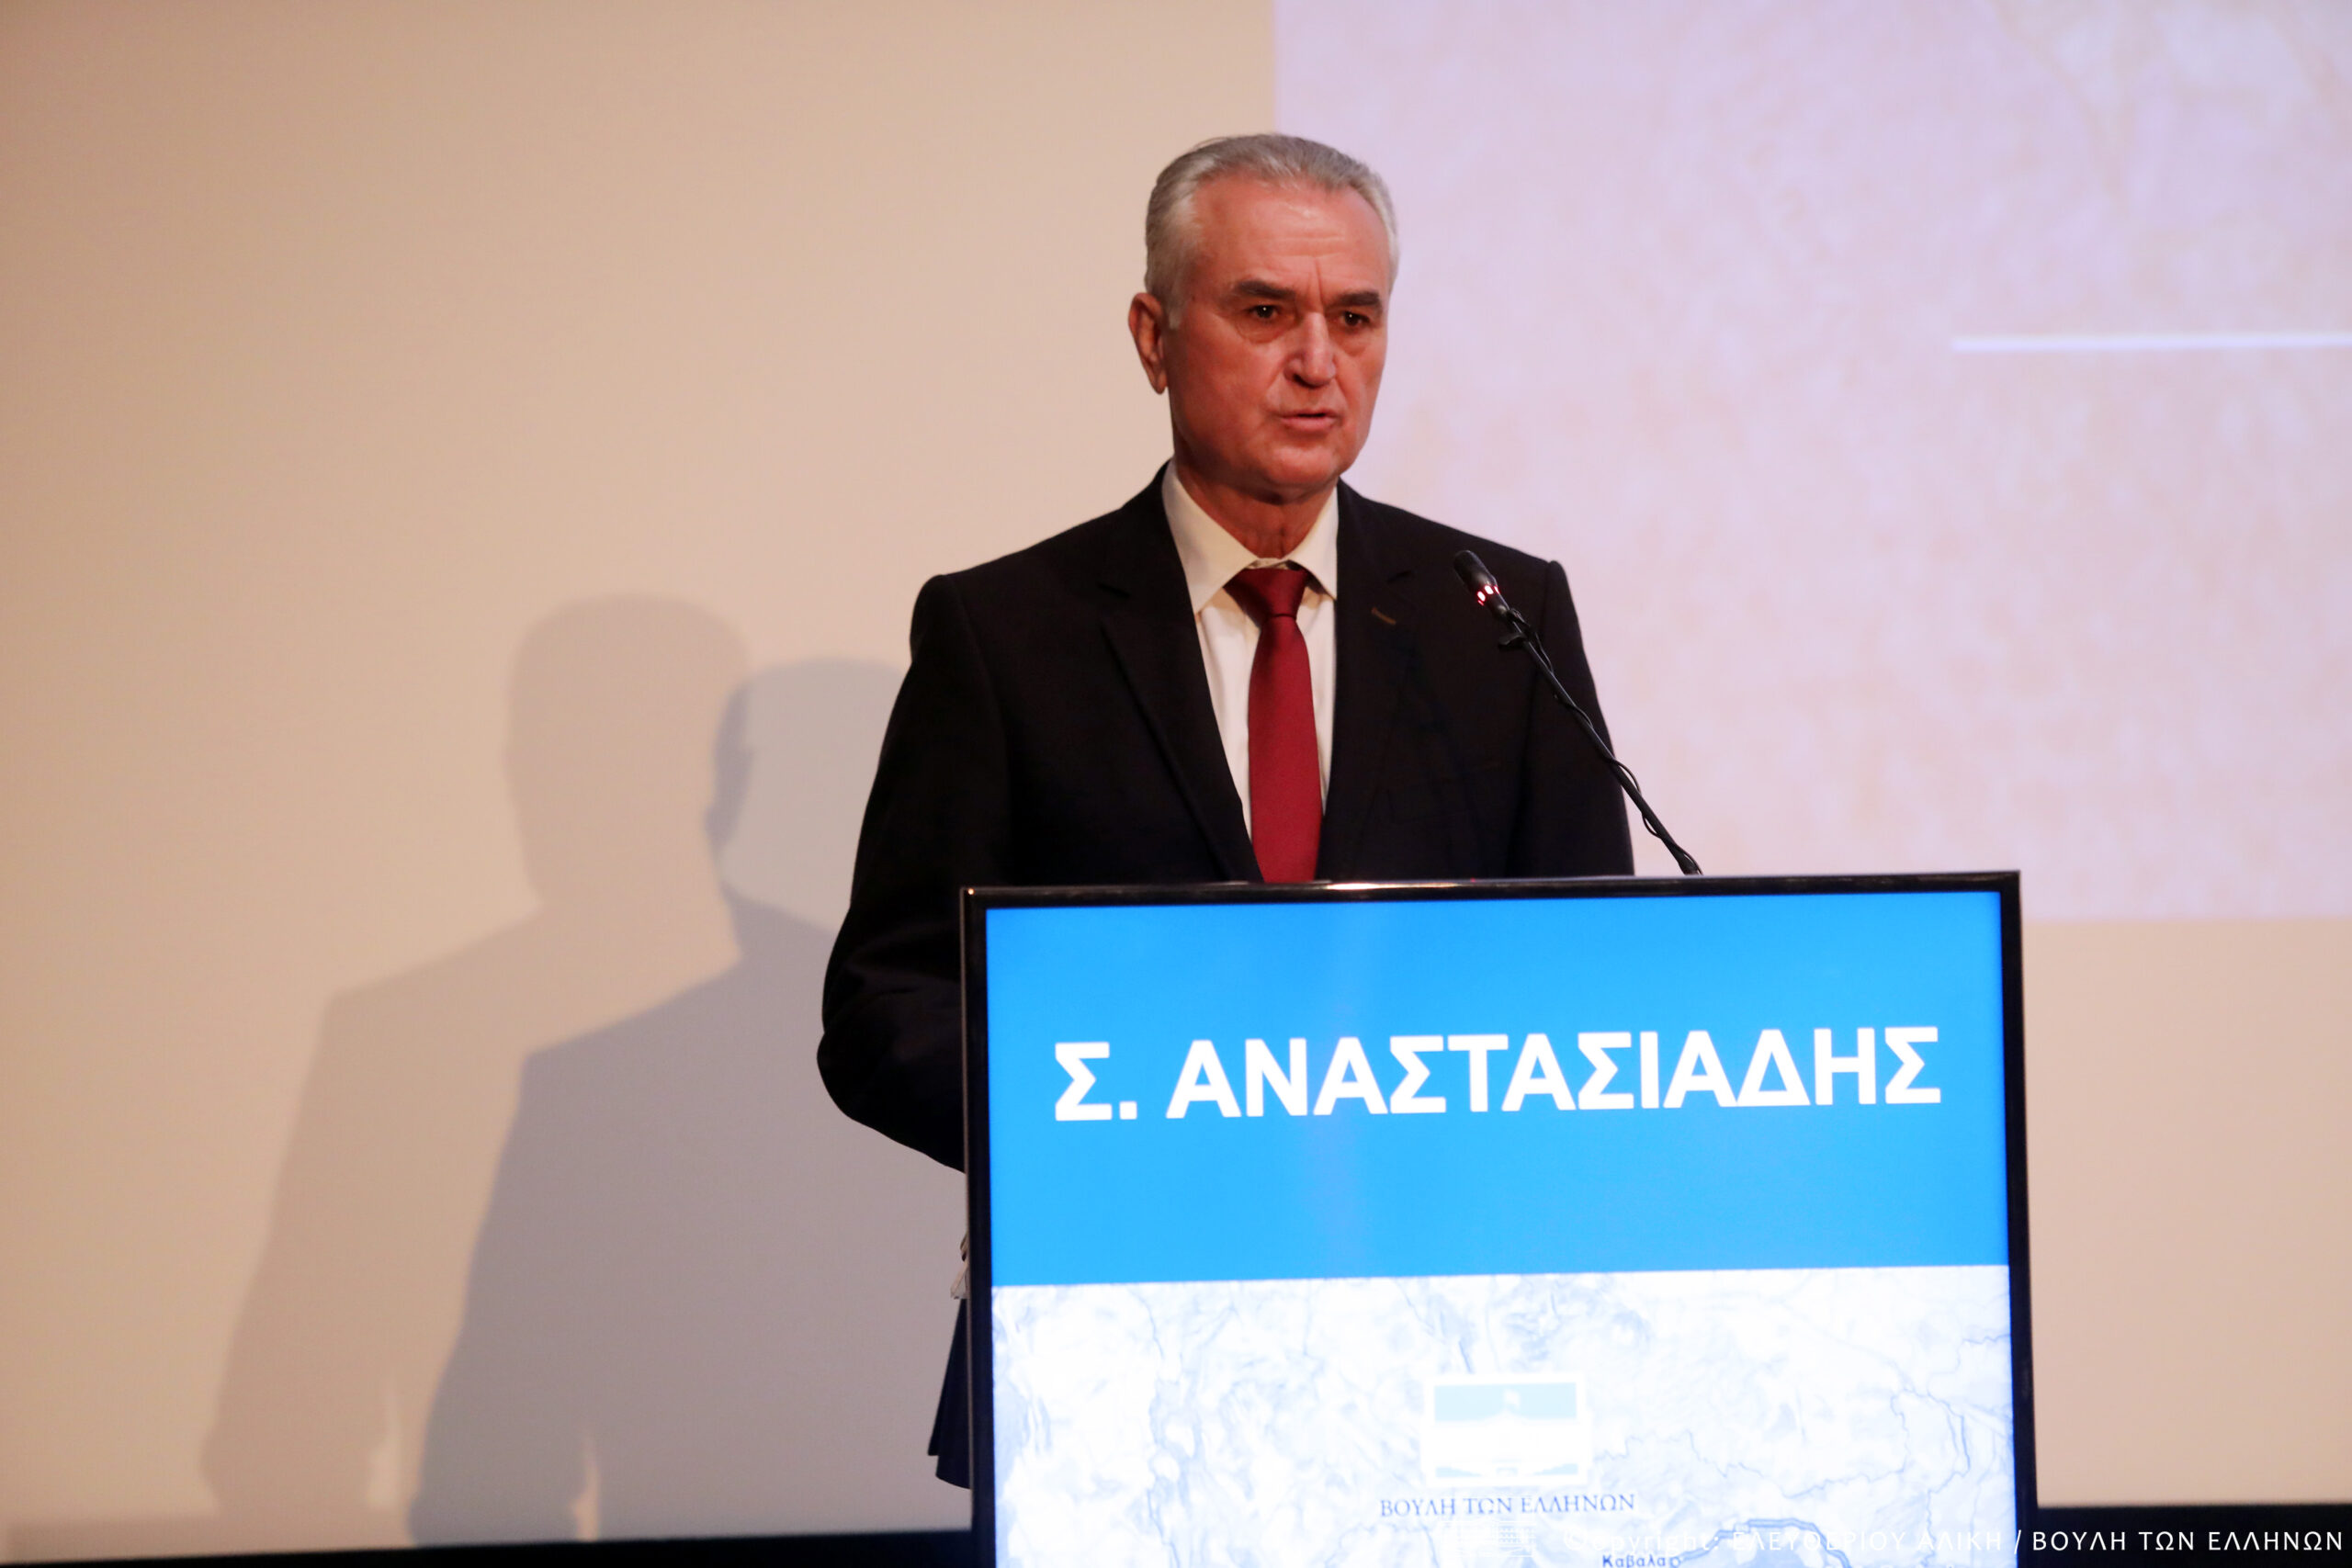 Σάββας Αναστασιάδης: ” Είμαστε δίπλα στους Ελληνες της Μαριούπολης”